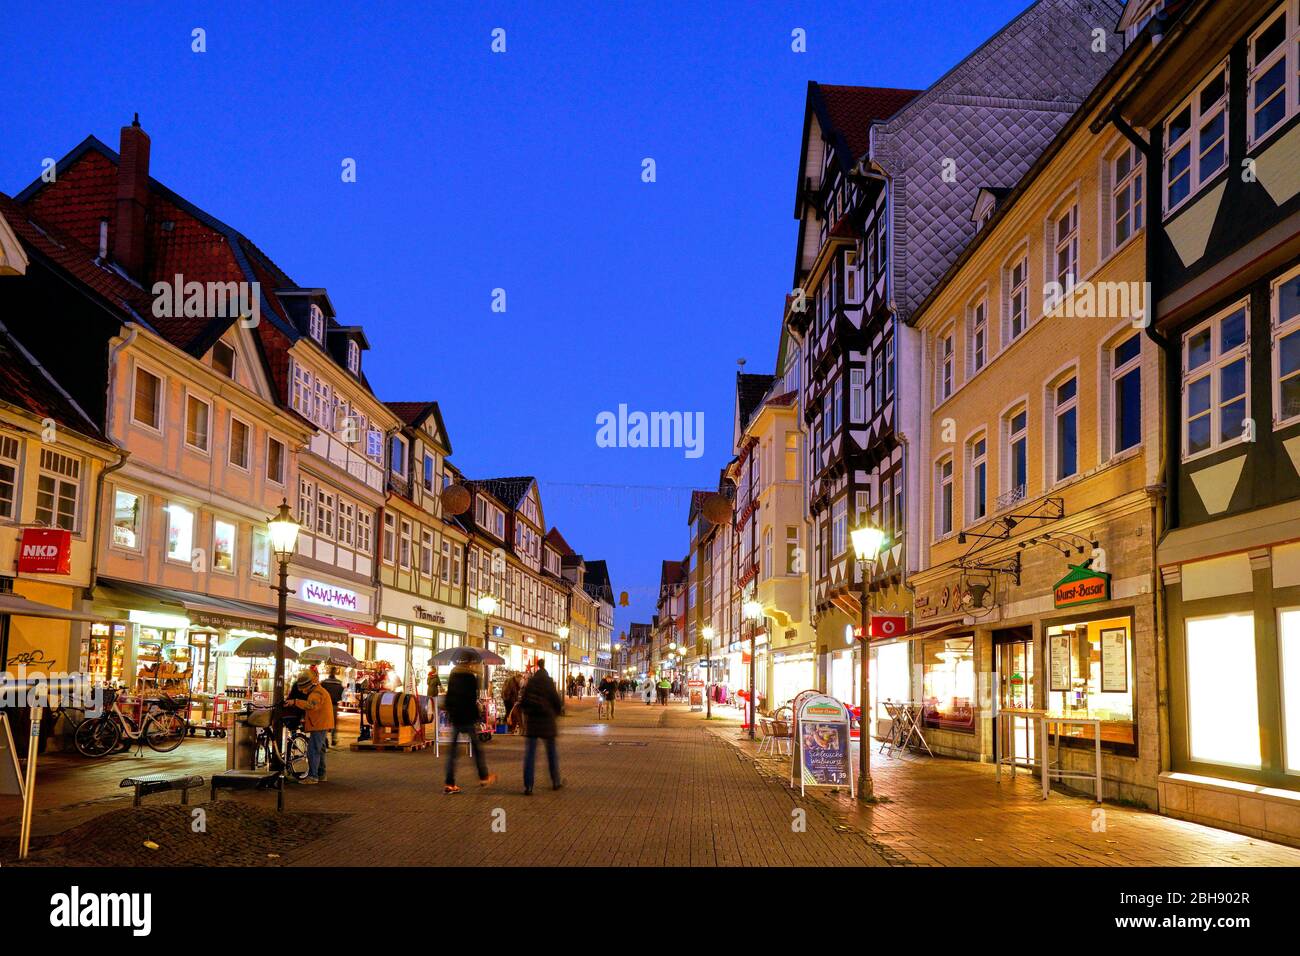 Allemagne, Niedersachsen, Wolfenbüttel, Altstadt, Lange Herzogstraße, Fußgängerzone, Fachwerkhäuser, abends, beleuchtet Banque D'Images